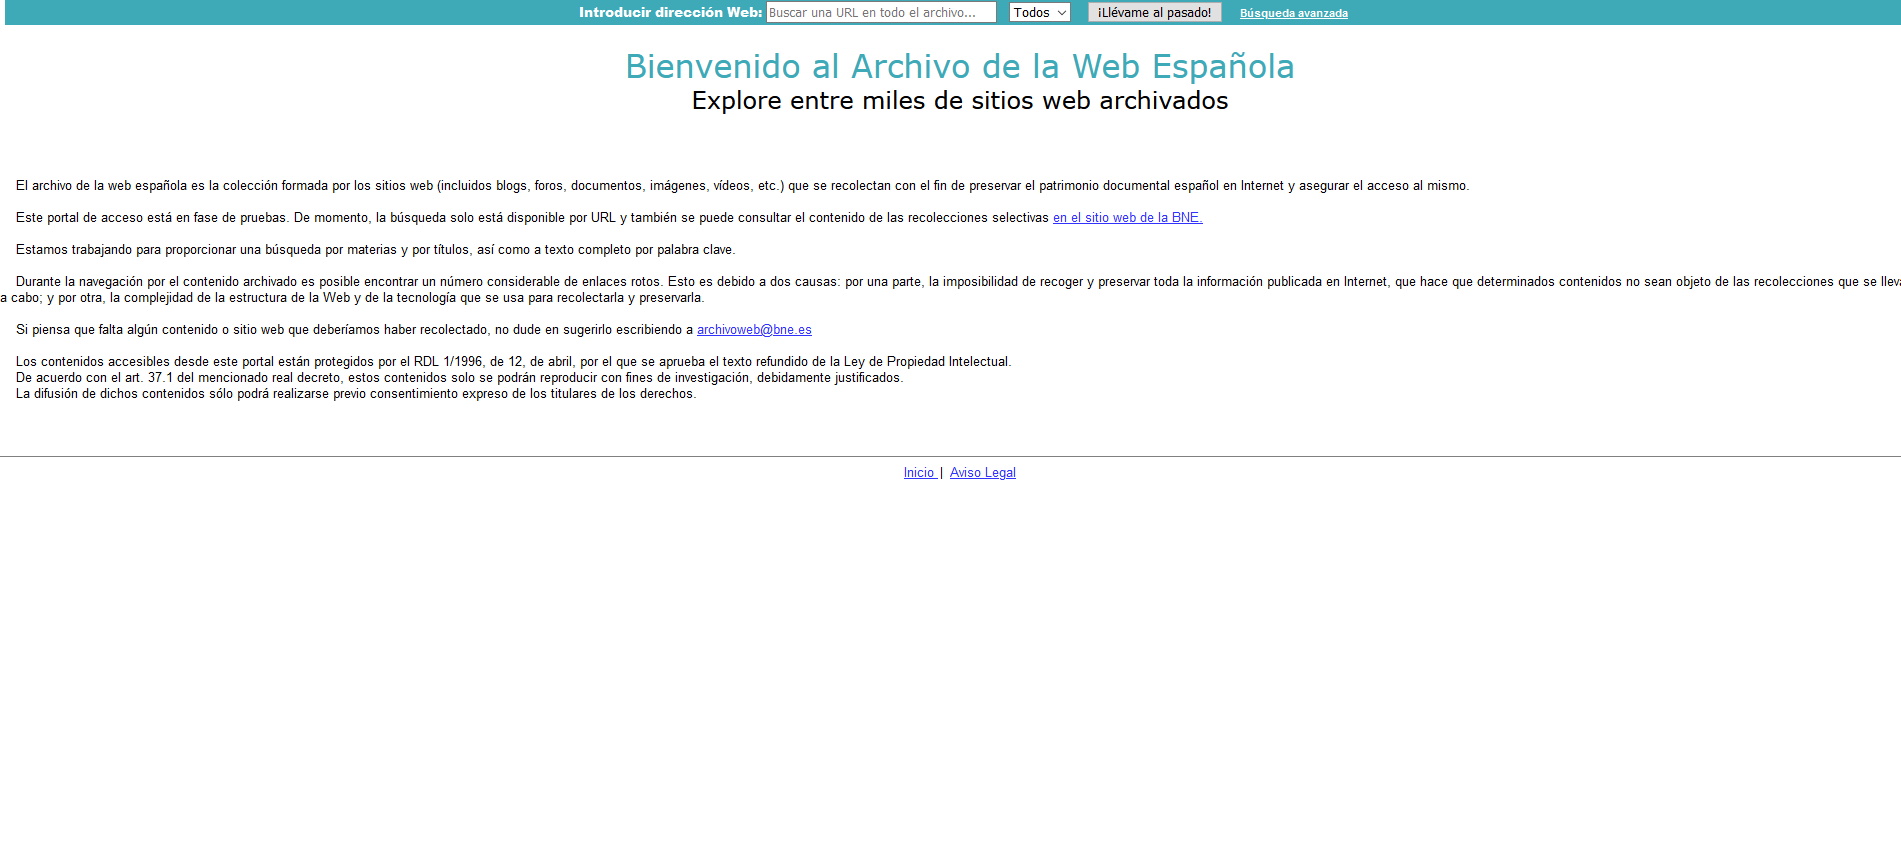 Imagen de la página de inicio del Portal de Archivo de la web Española